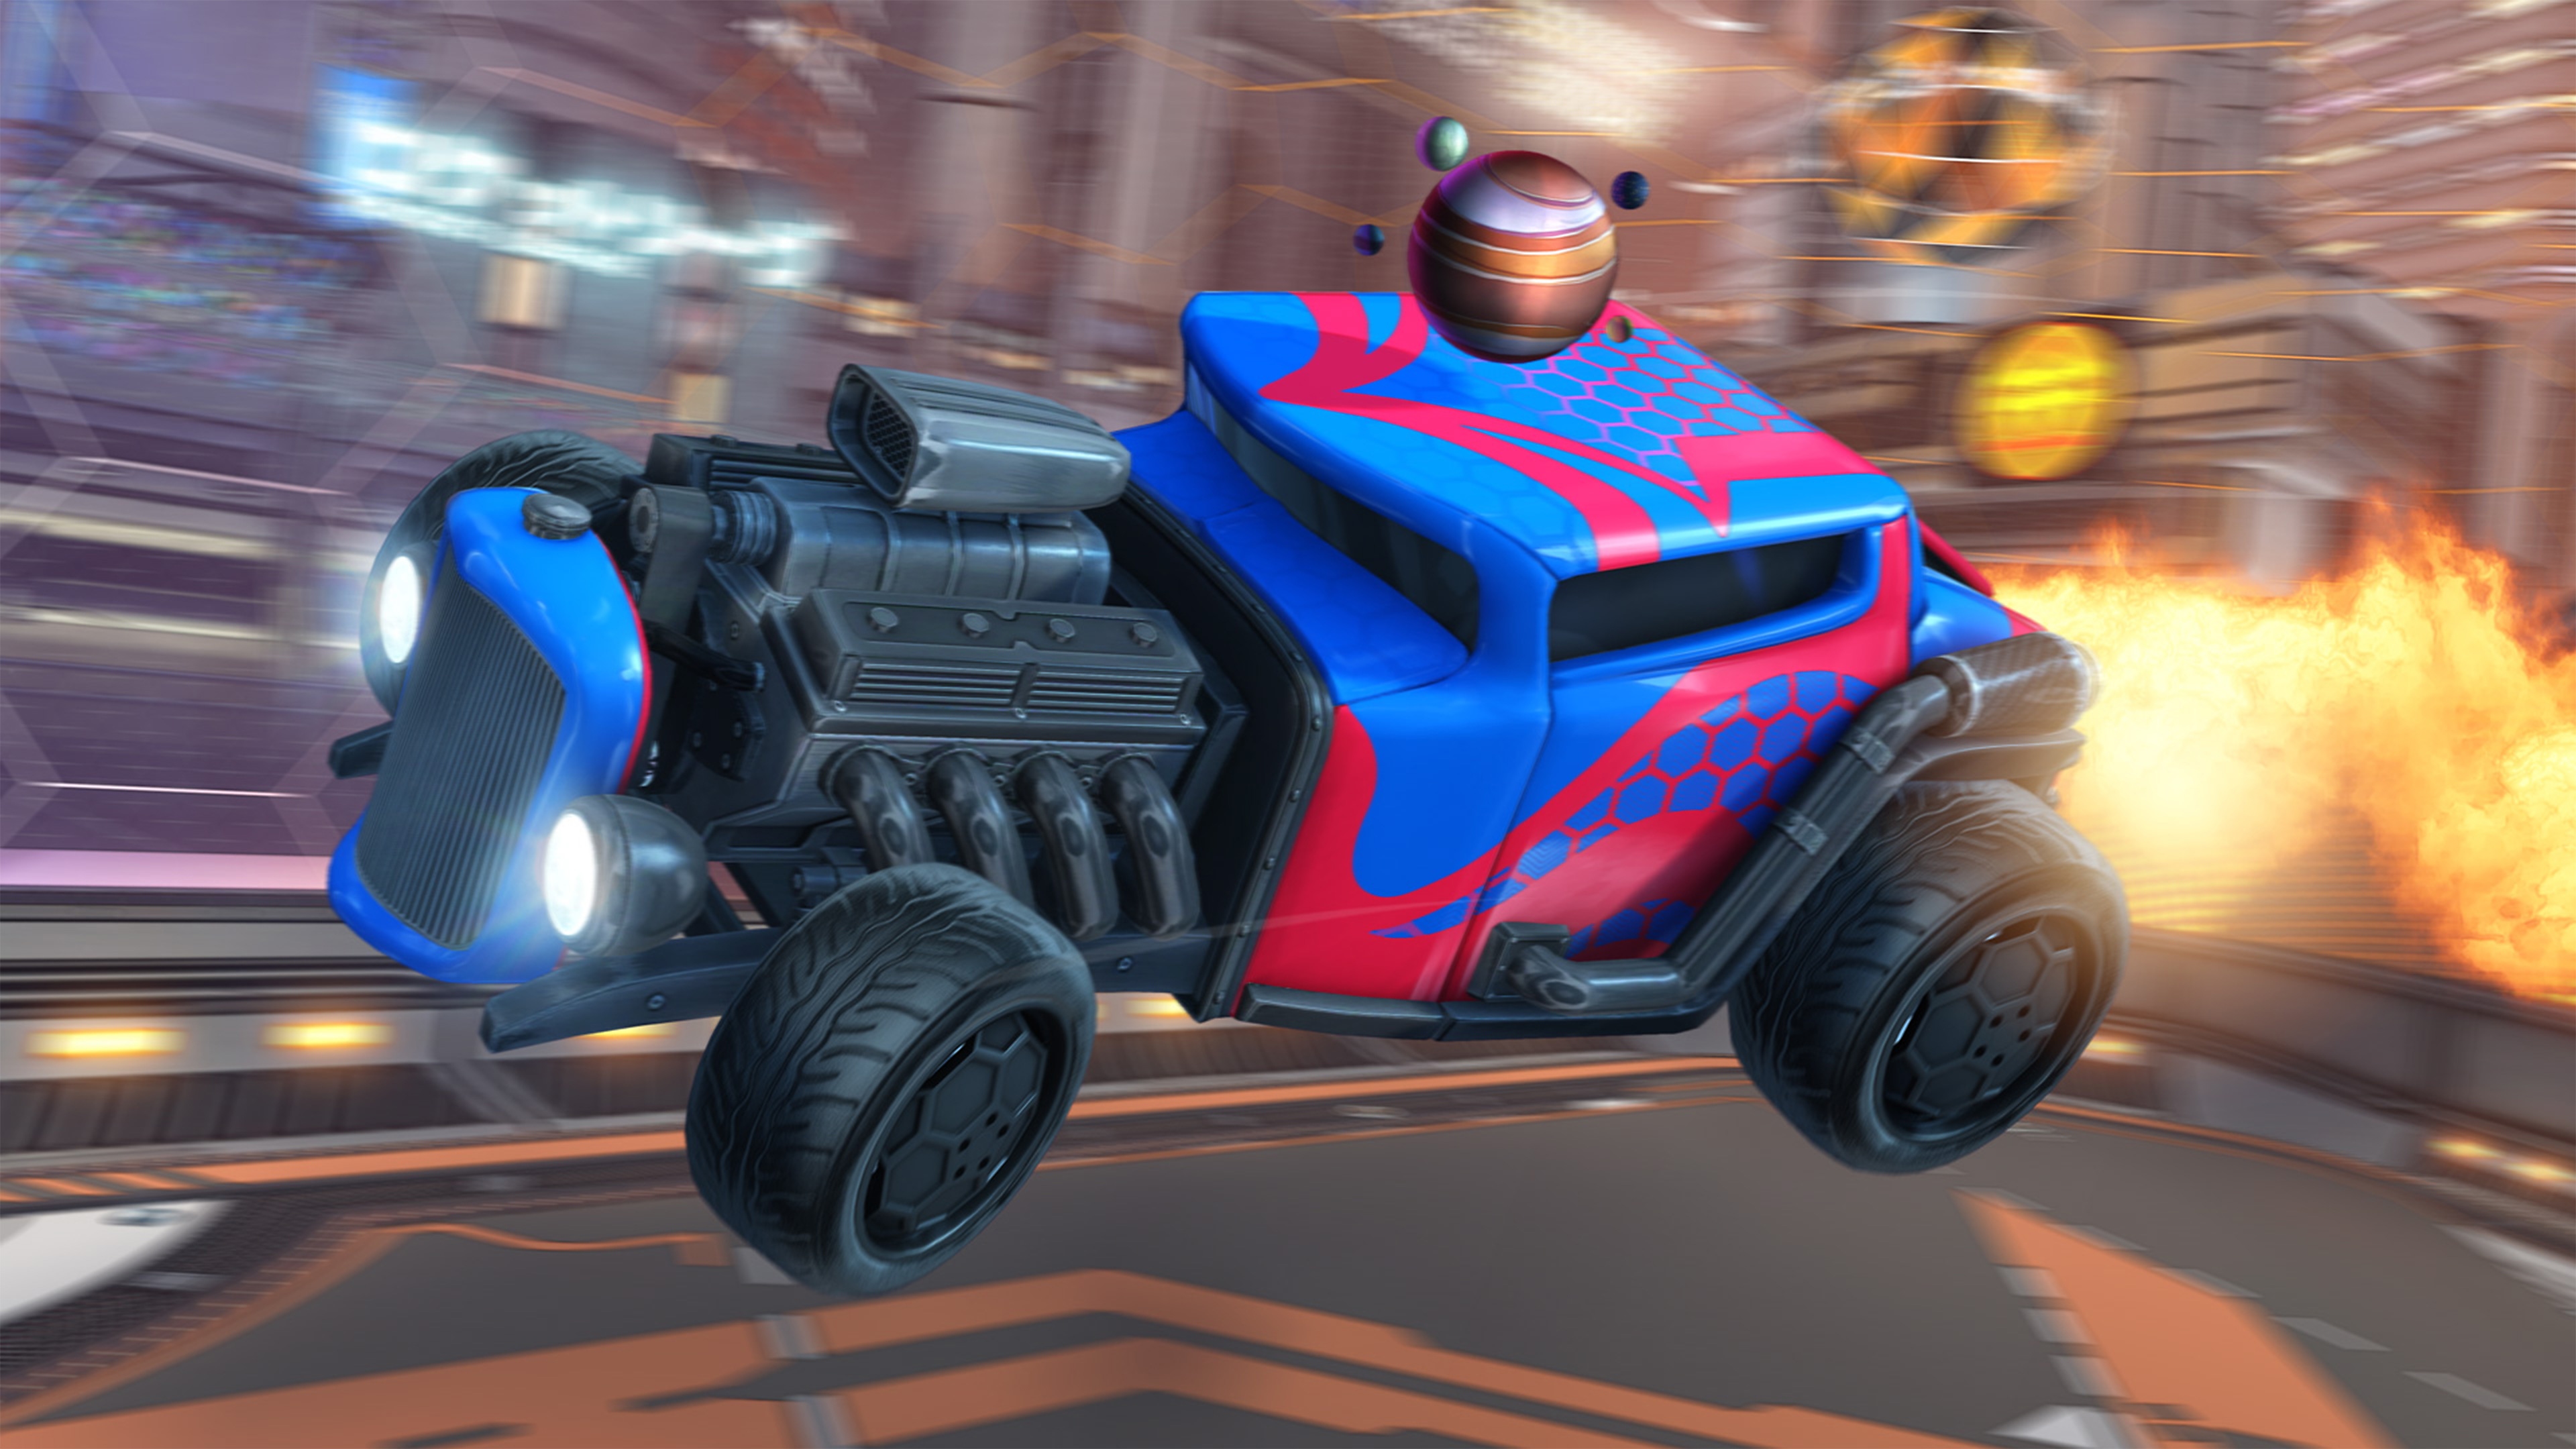 لقطة شاشة لـ Rocket League تظهر فيها سيارة هوت رود مع محرك مكشوف مطلية باللون الأحمر والأزرق